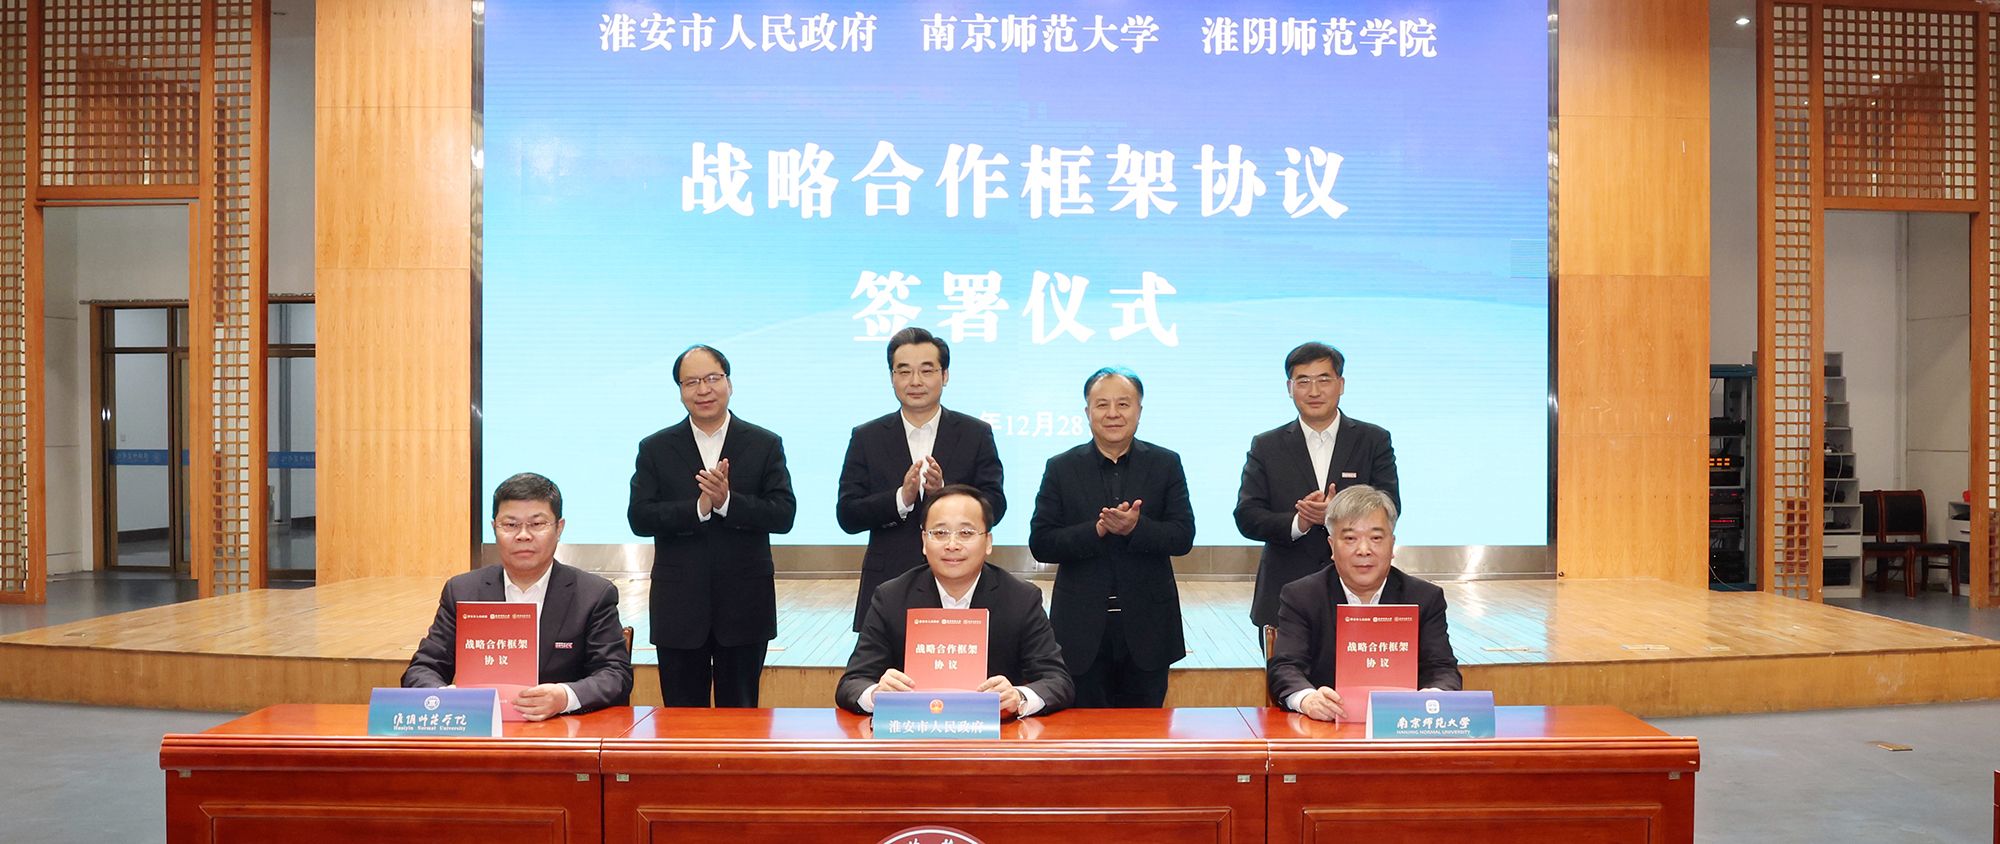 竞博体育jbo与淮安市人民政府、南京师范大学签署战略合作框架协议